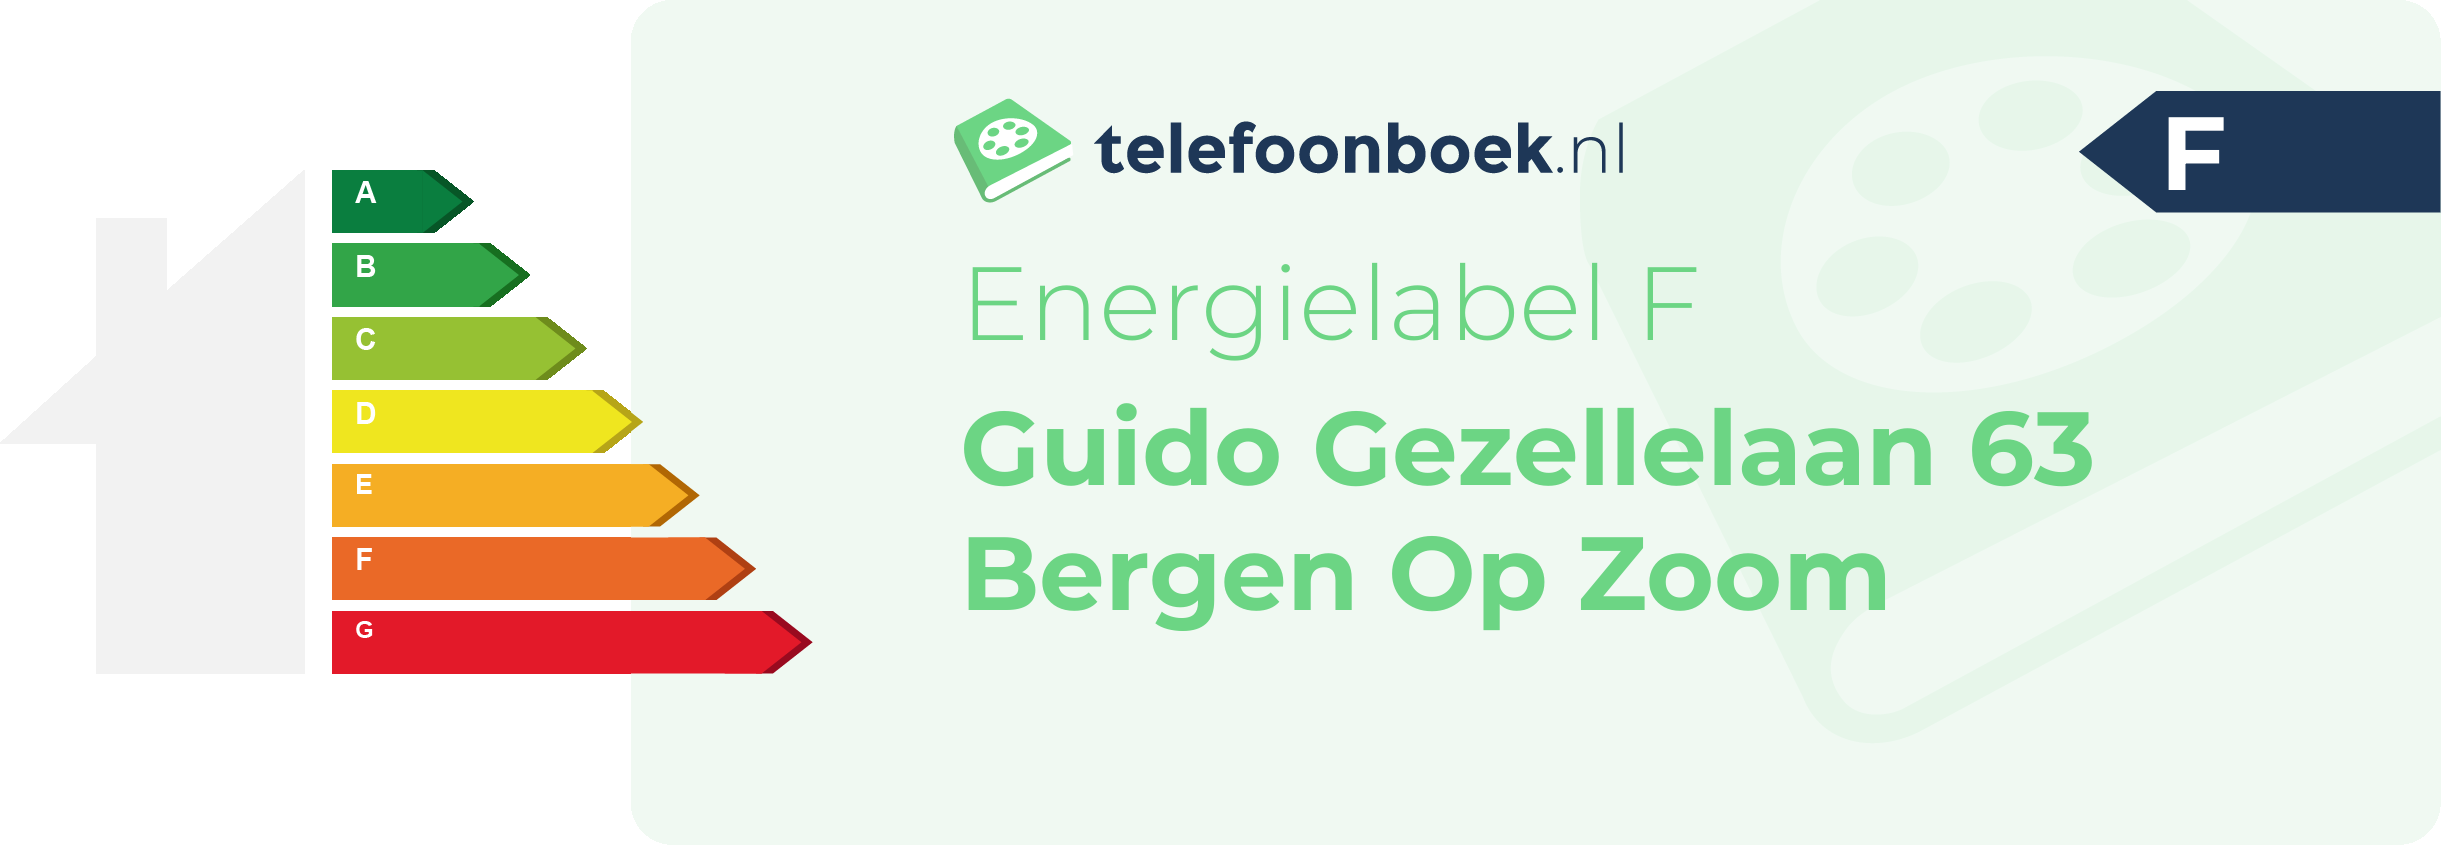 Energielabel Guido Gezellelaan 63 Bergen Op Zoom